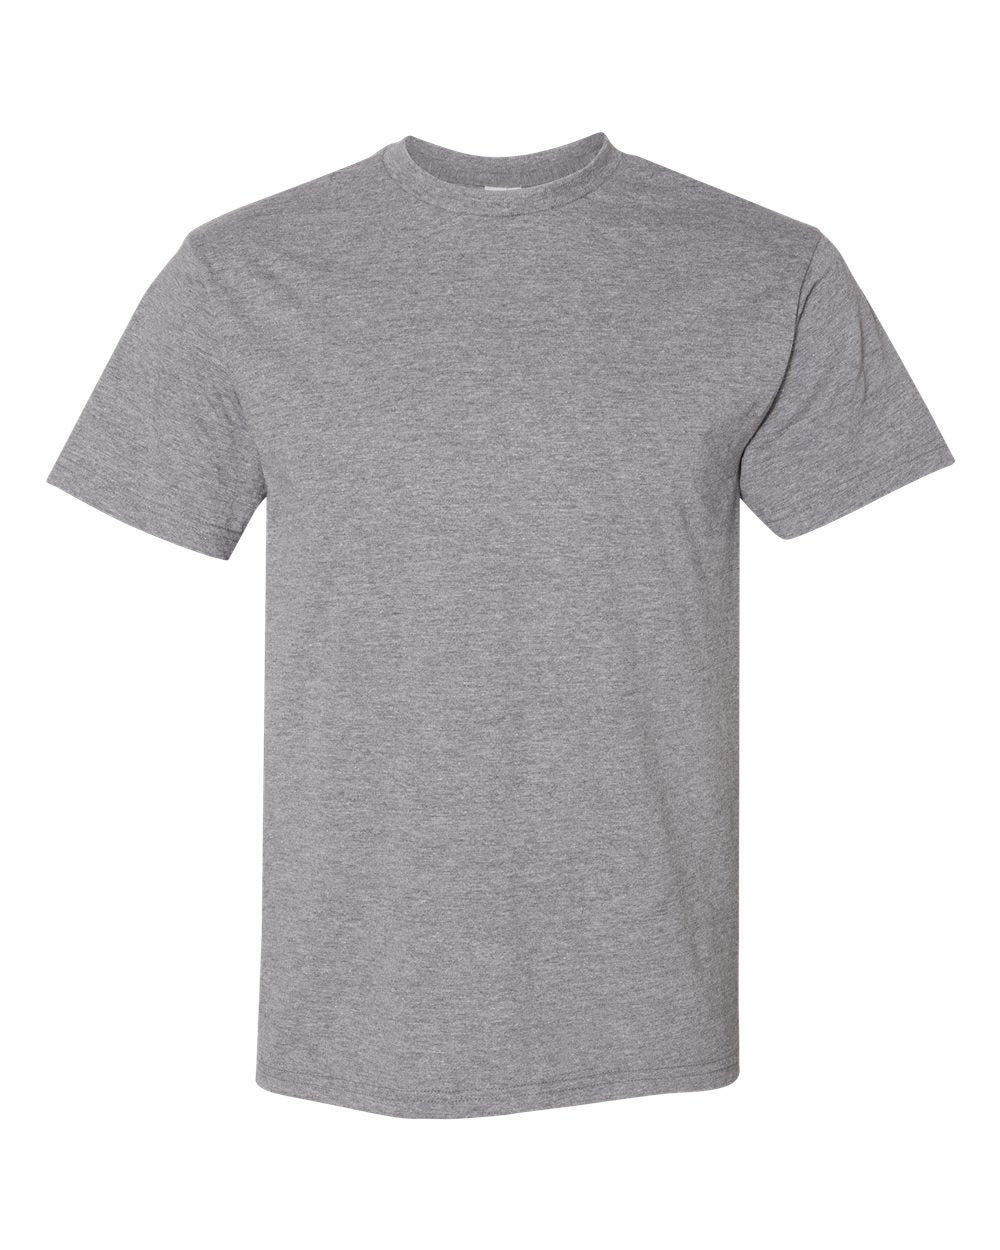 Hammer™ T-Shirt - Gildan H000